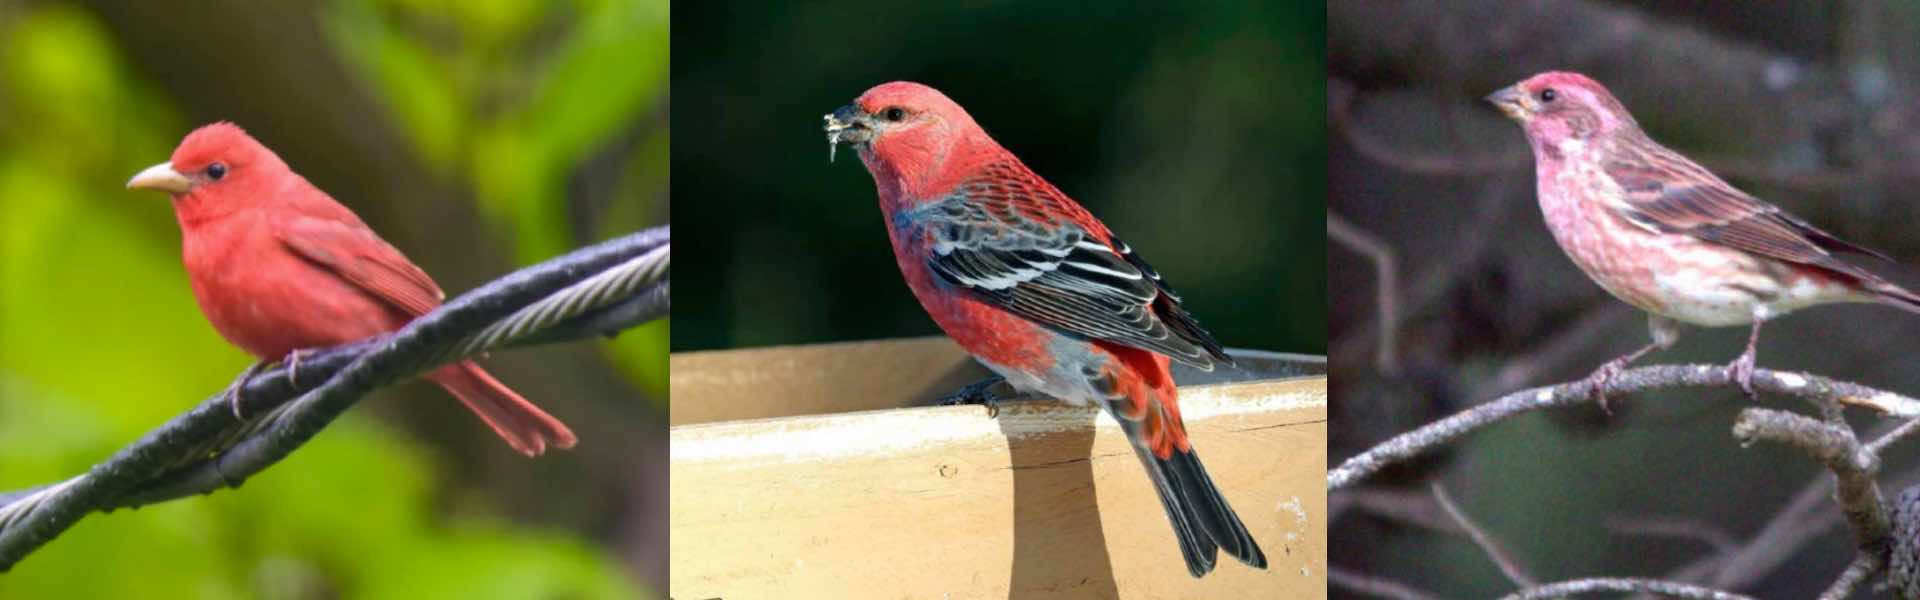 9 pájaros que parecen cardenales pero no lo son (con fotos de lado a lado)